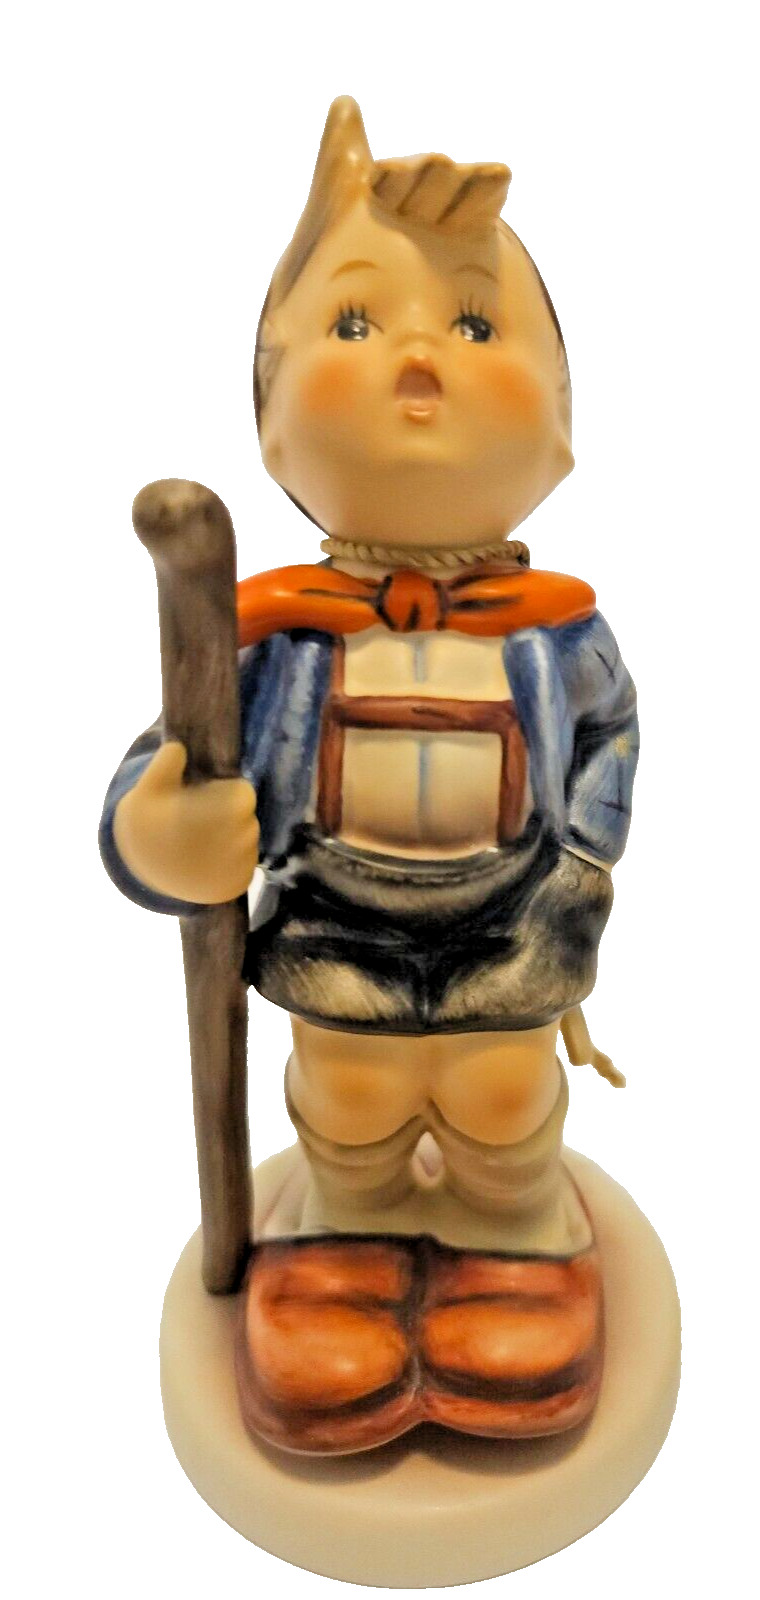 Goebel Hummel Figurine “16/1  FINAL ISSUE 2002 Little Hiker Boy  5.75' Tall RARE